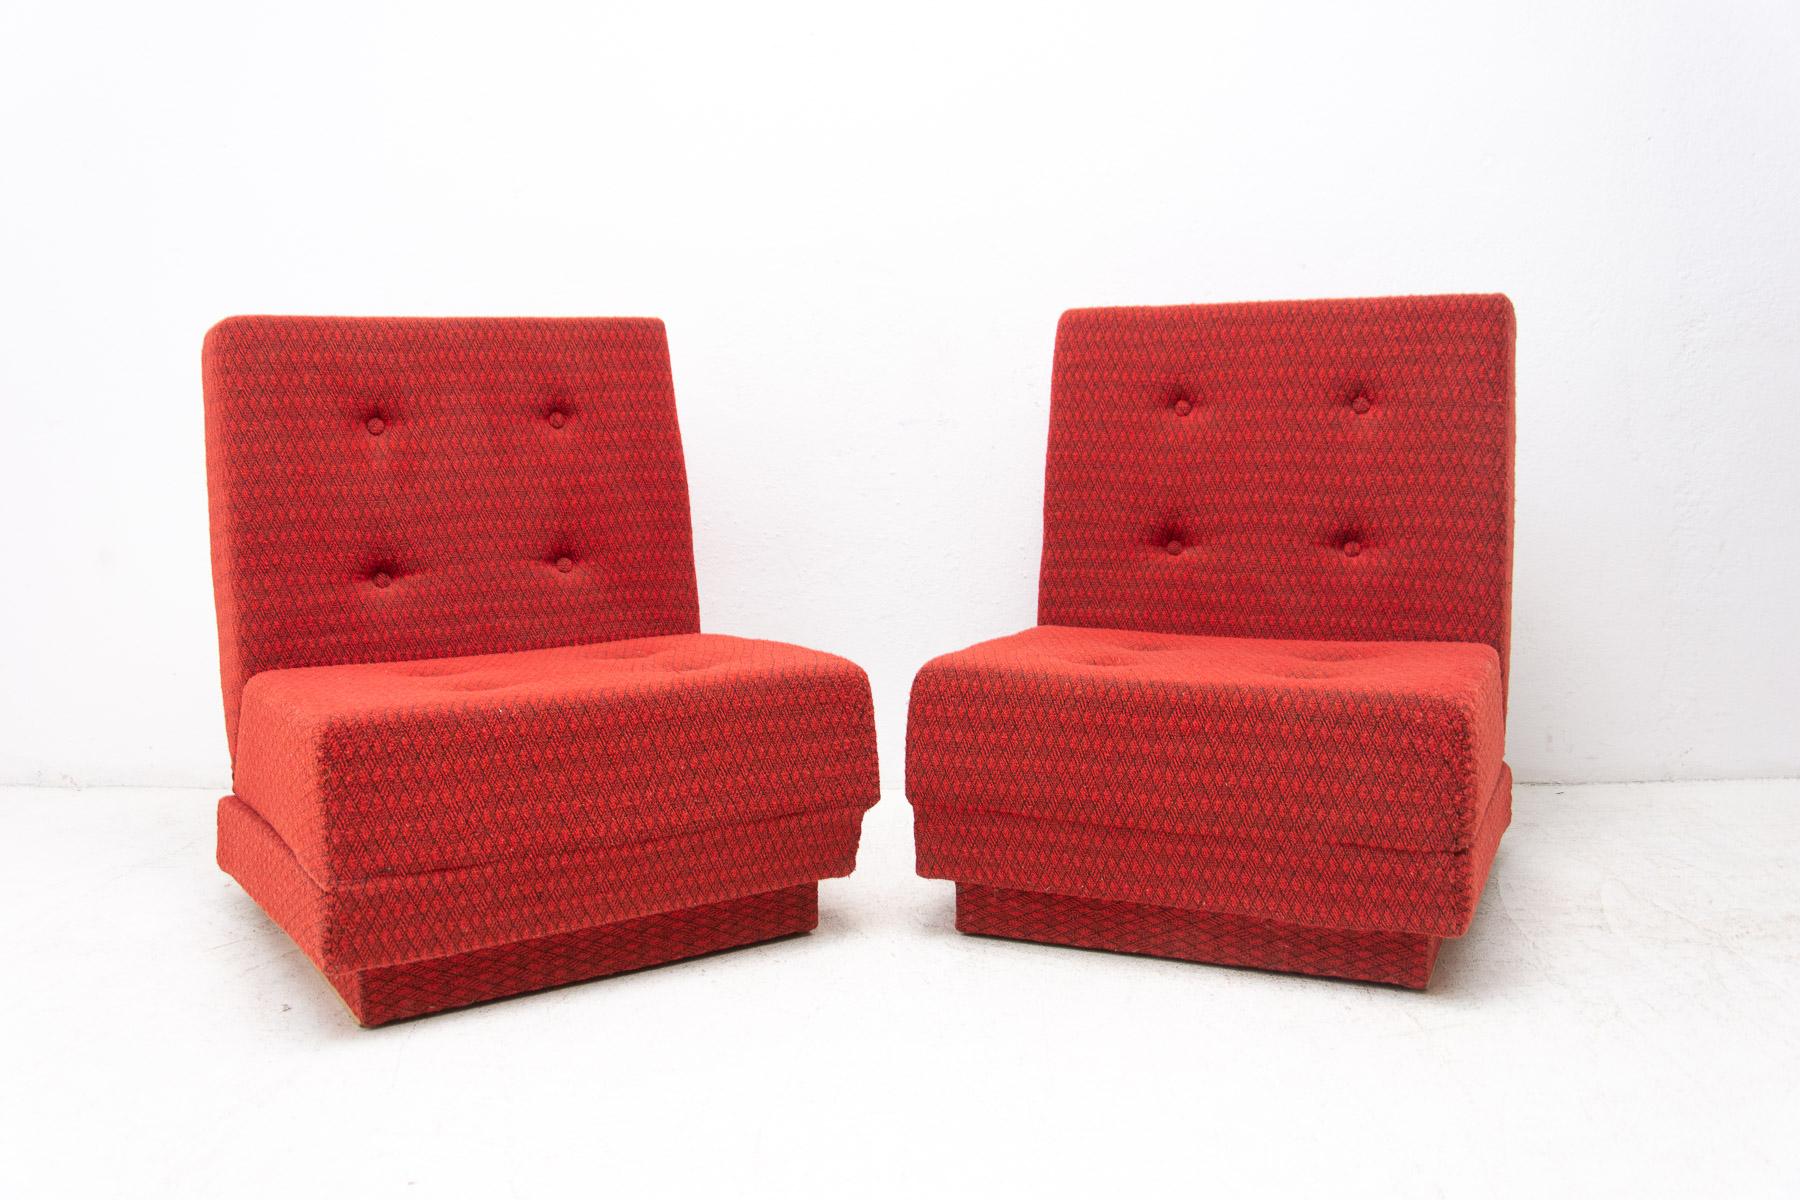 Ces jolis fauteuils pliants ont été produits dans les années 1980 par la société Drevotvar Pardubice sur le territoire de l'ancienne Tchécoslovaquie.
Les chaises sont entièrement rembourrées, faites de contreplaqué, de mousse et de tissu.
Il est